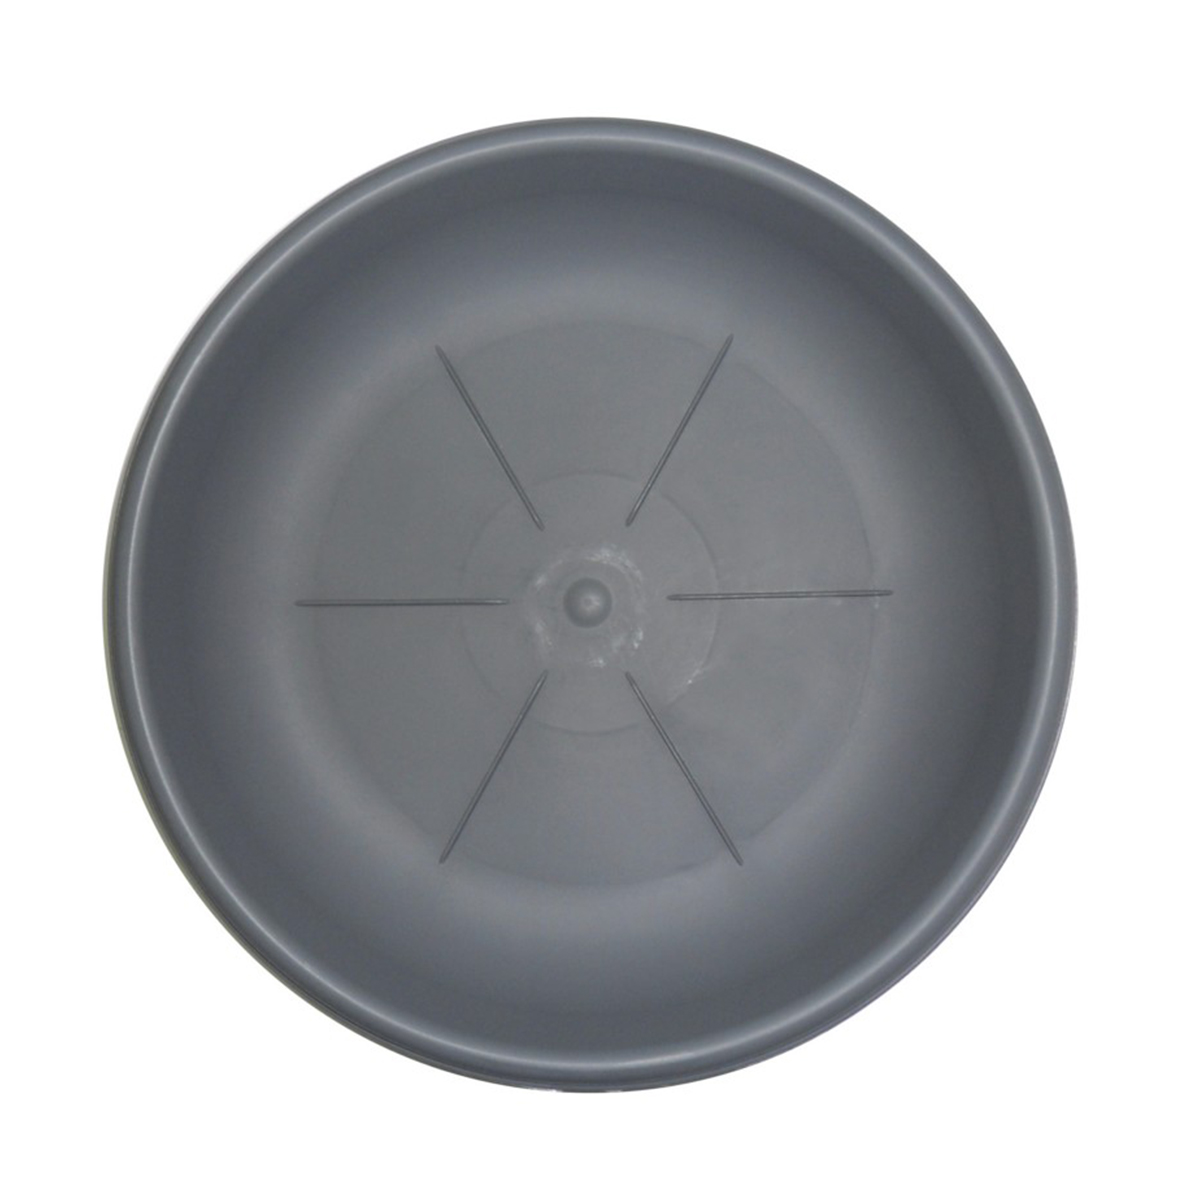 Sottovaso rotondo Bama diametro 30 cm colore grigio